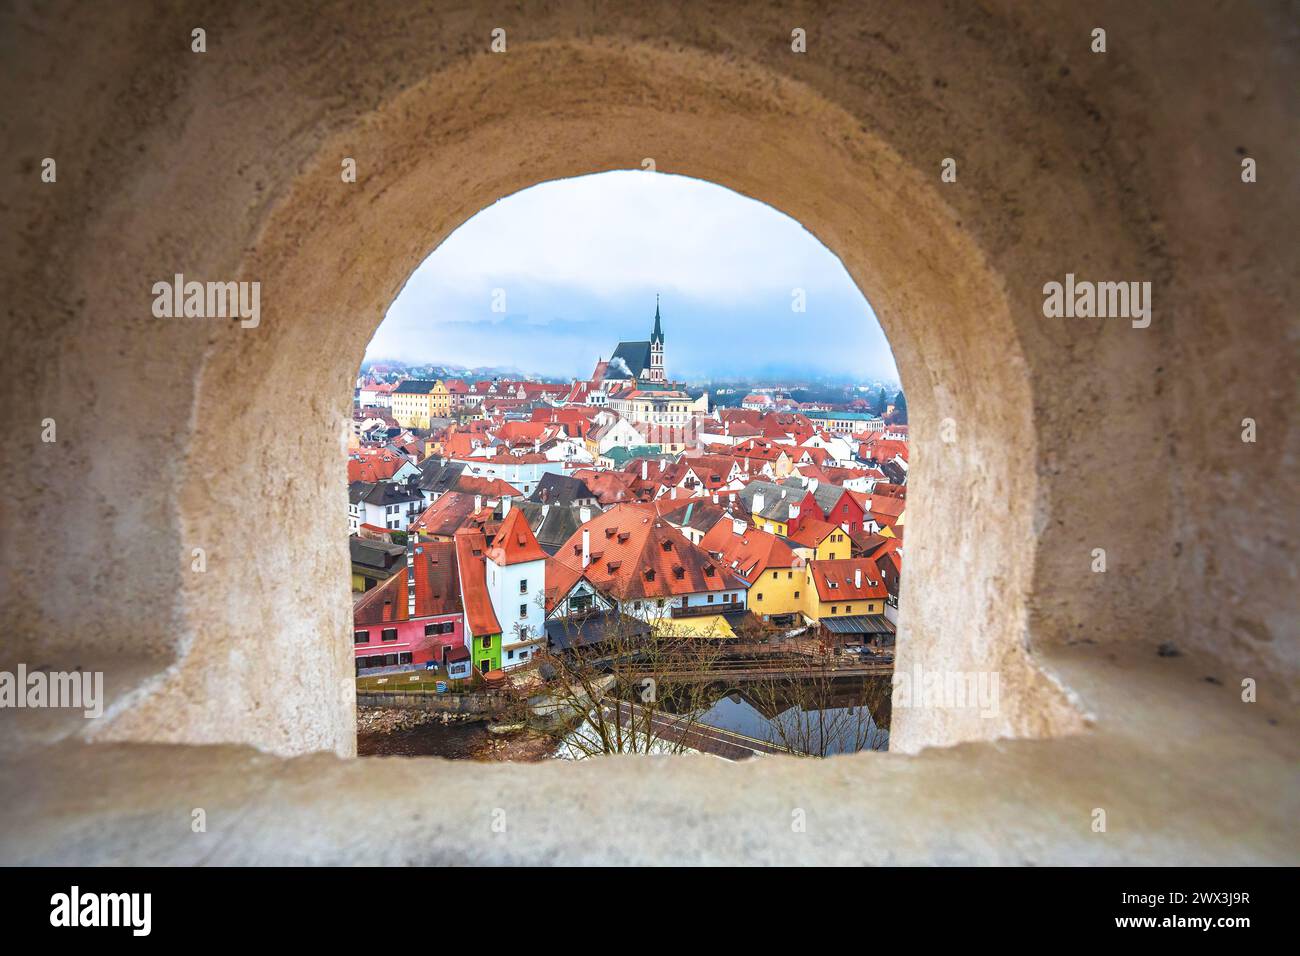 Vista panoramica della città di Cesky Krumlov e del fiume Moldava attraverso la finestra in pietra, regione della Boemia meridionale della Repubblica Ceca Foto Stock